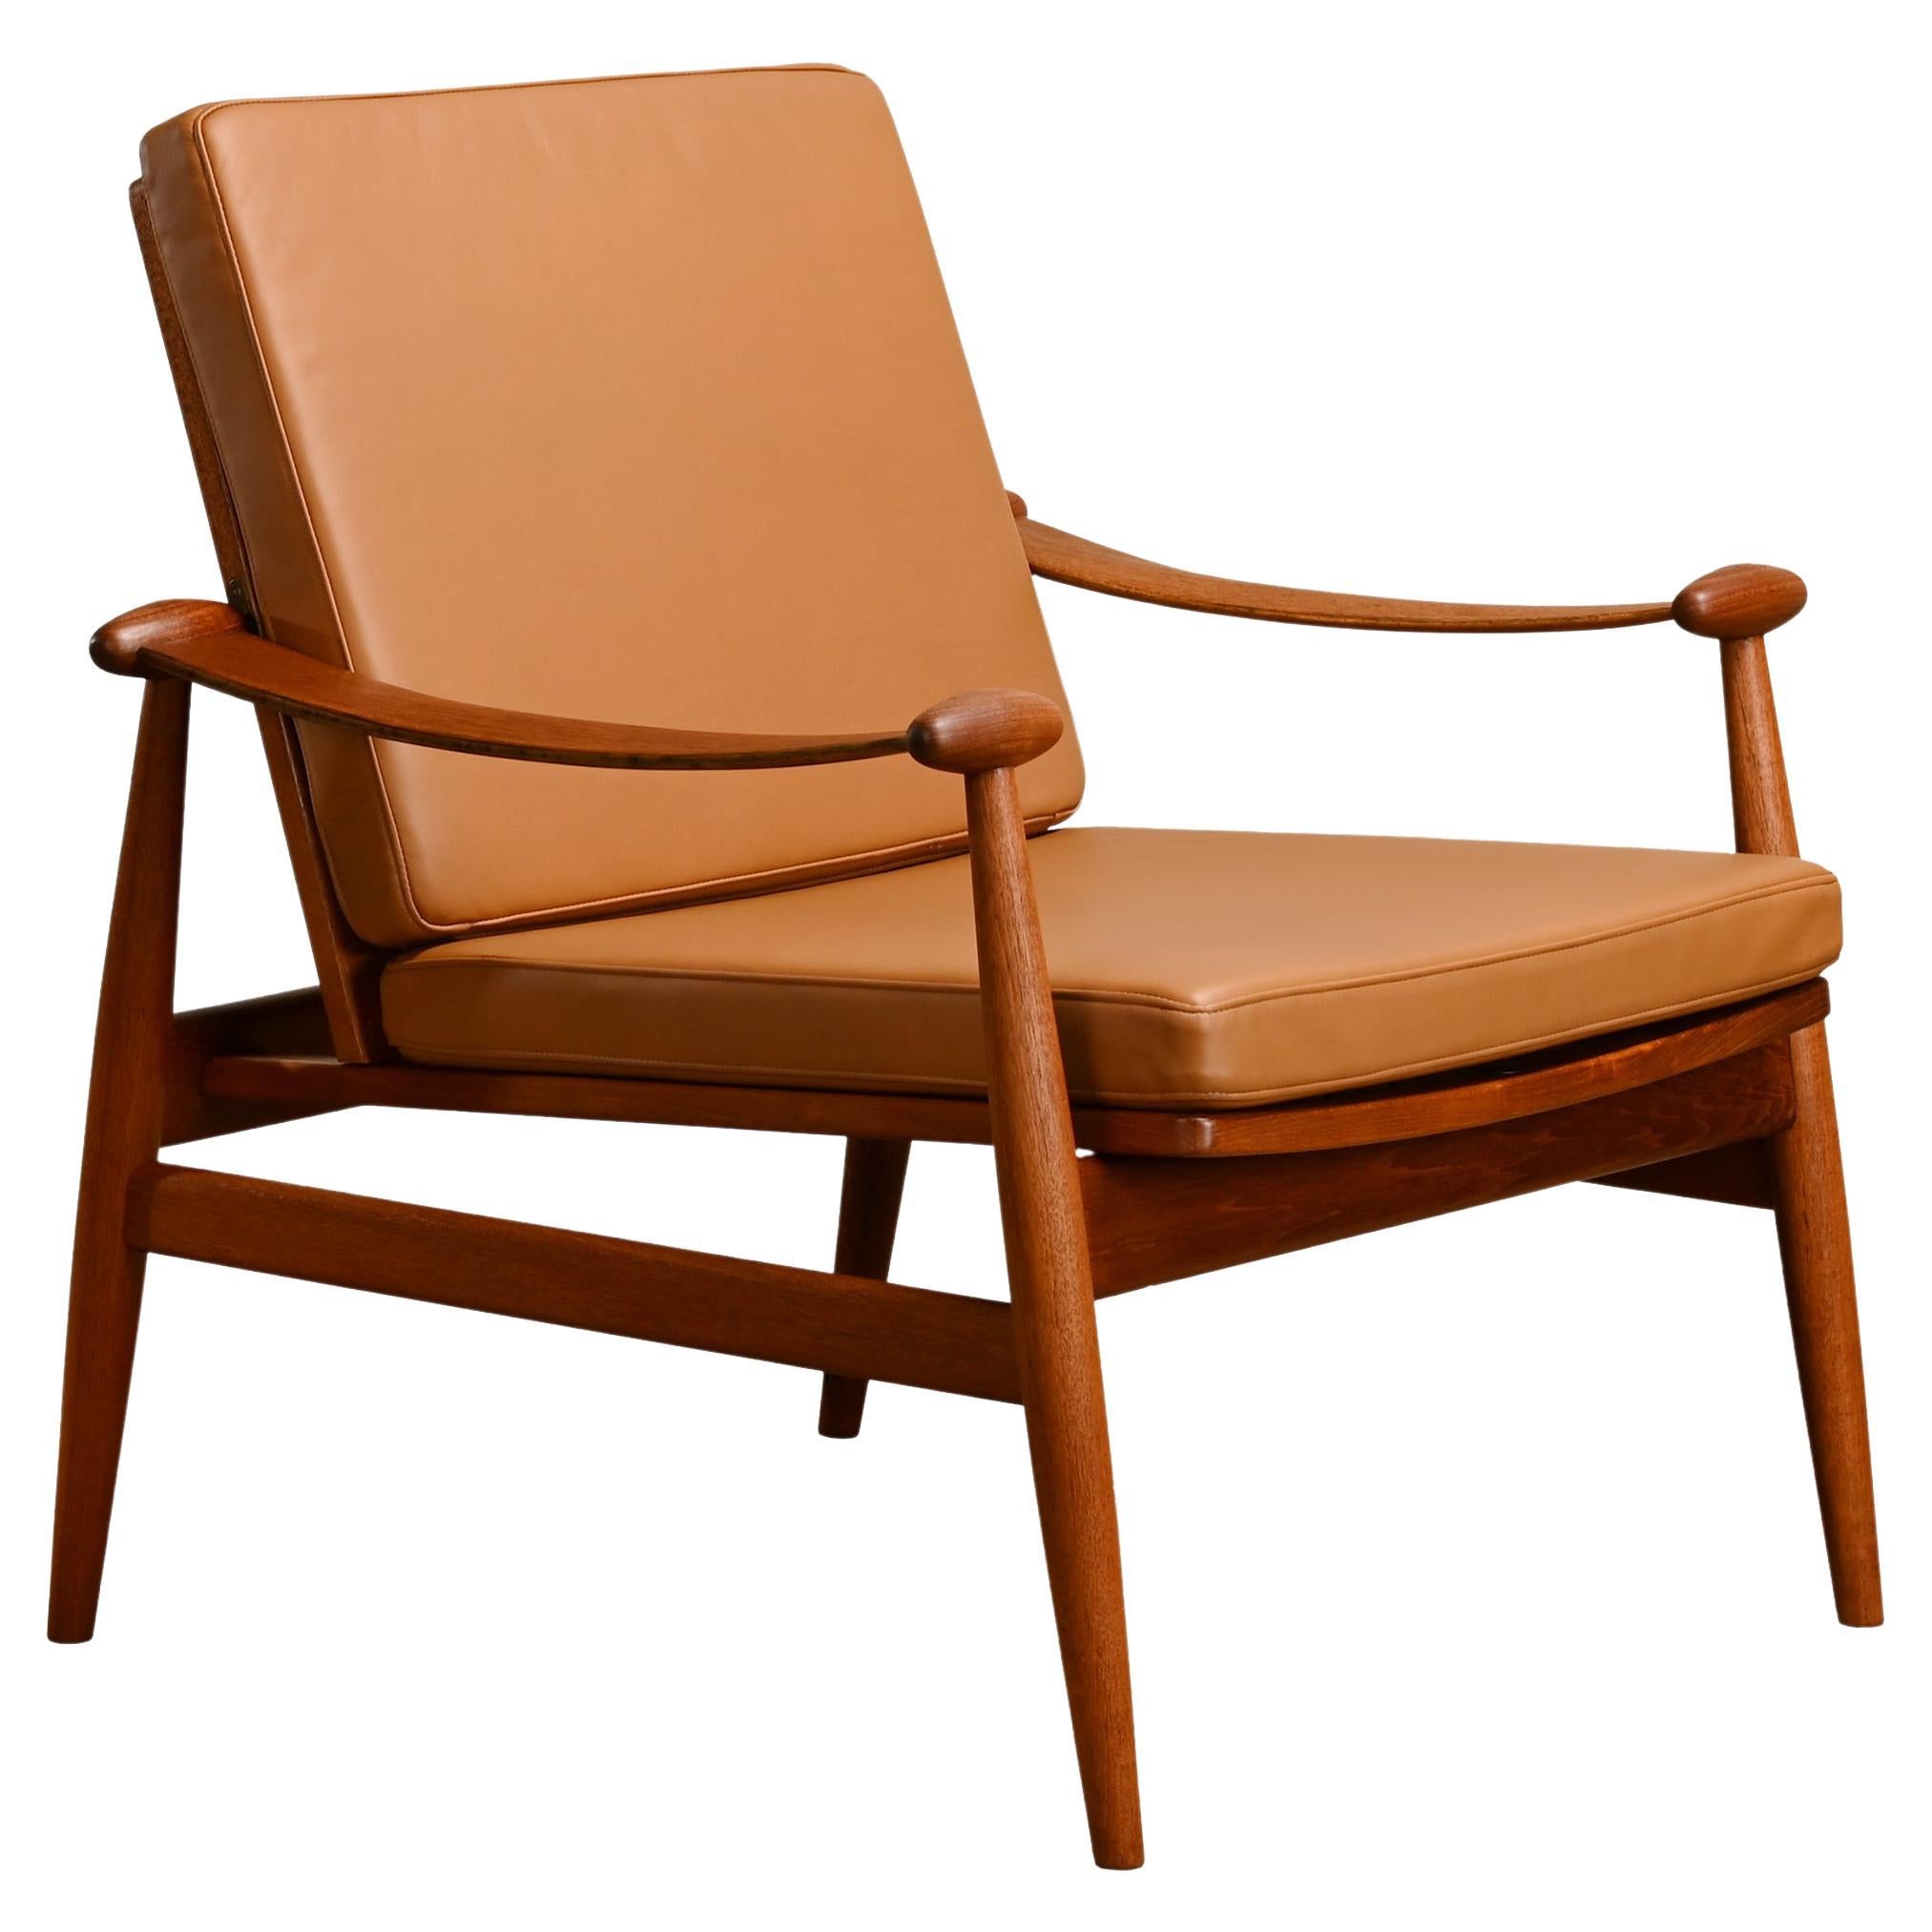 Finn Juhl FD-133 Easy Chair in Teak and Cognac Leather for France & Daverkosen